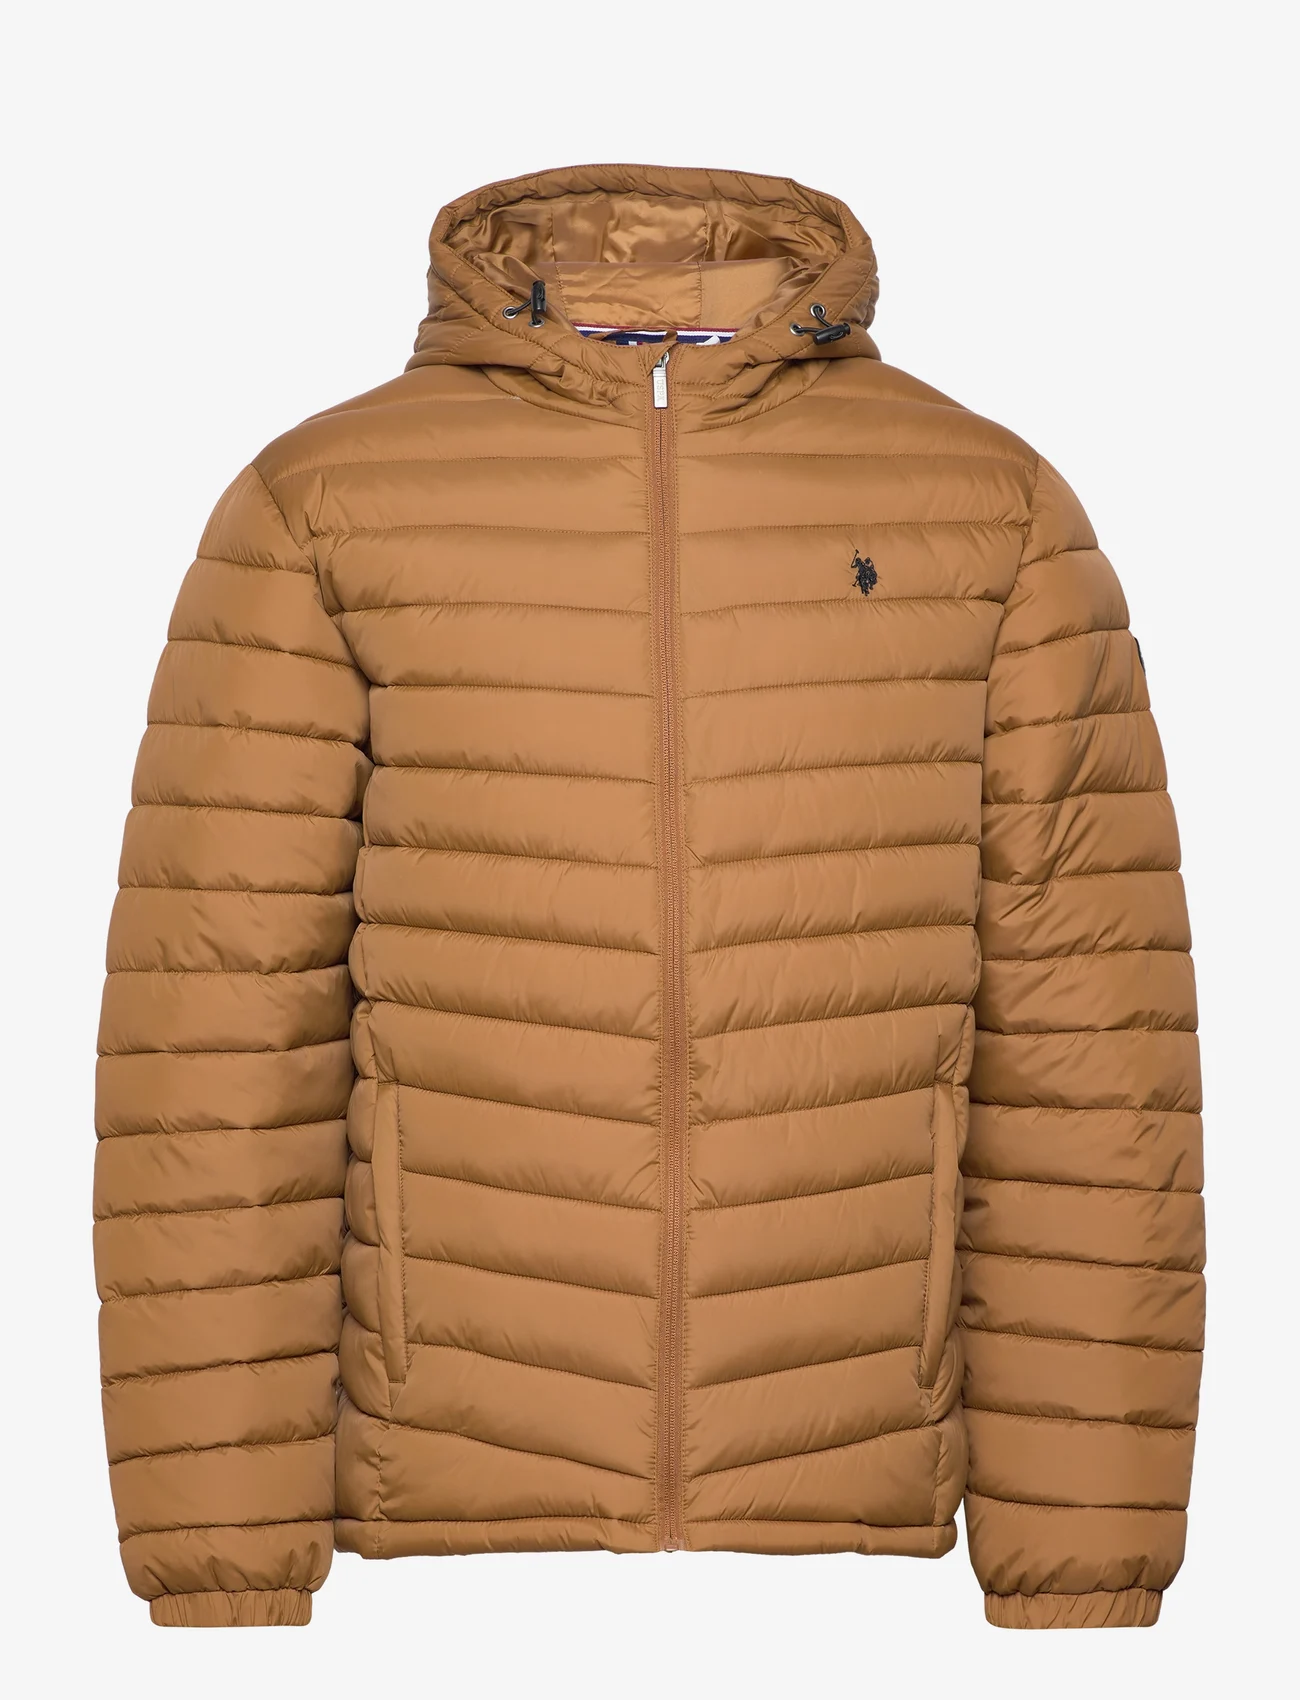 U.S. Polo Assn. - USPA Jacket Clas Men - winter jackets - rubber - 0